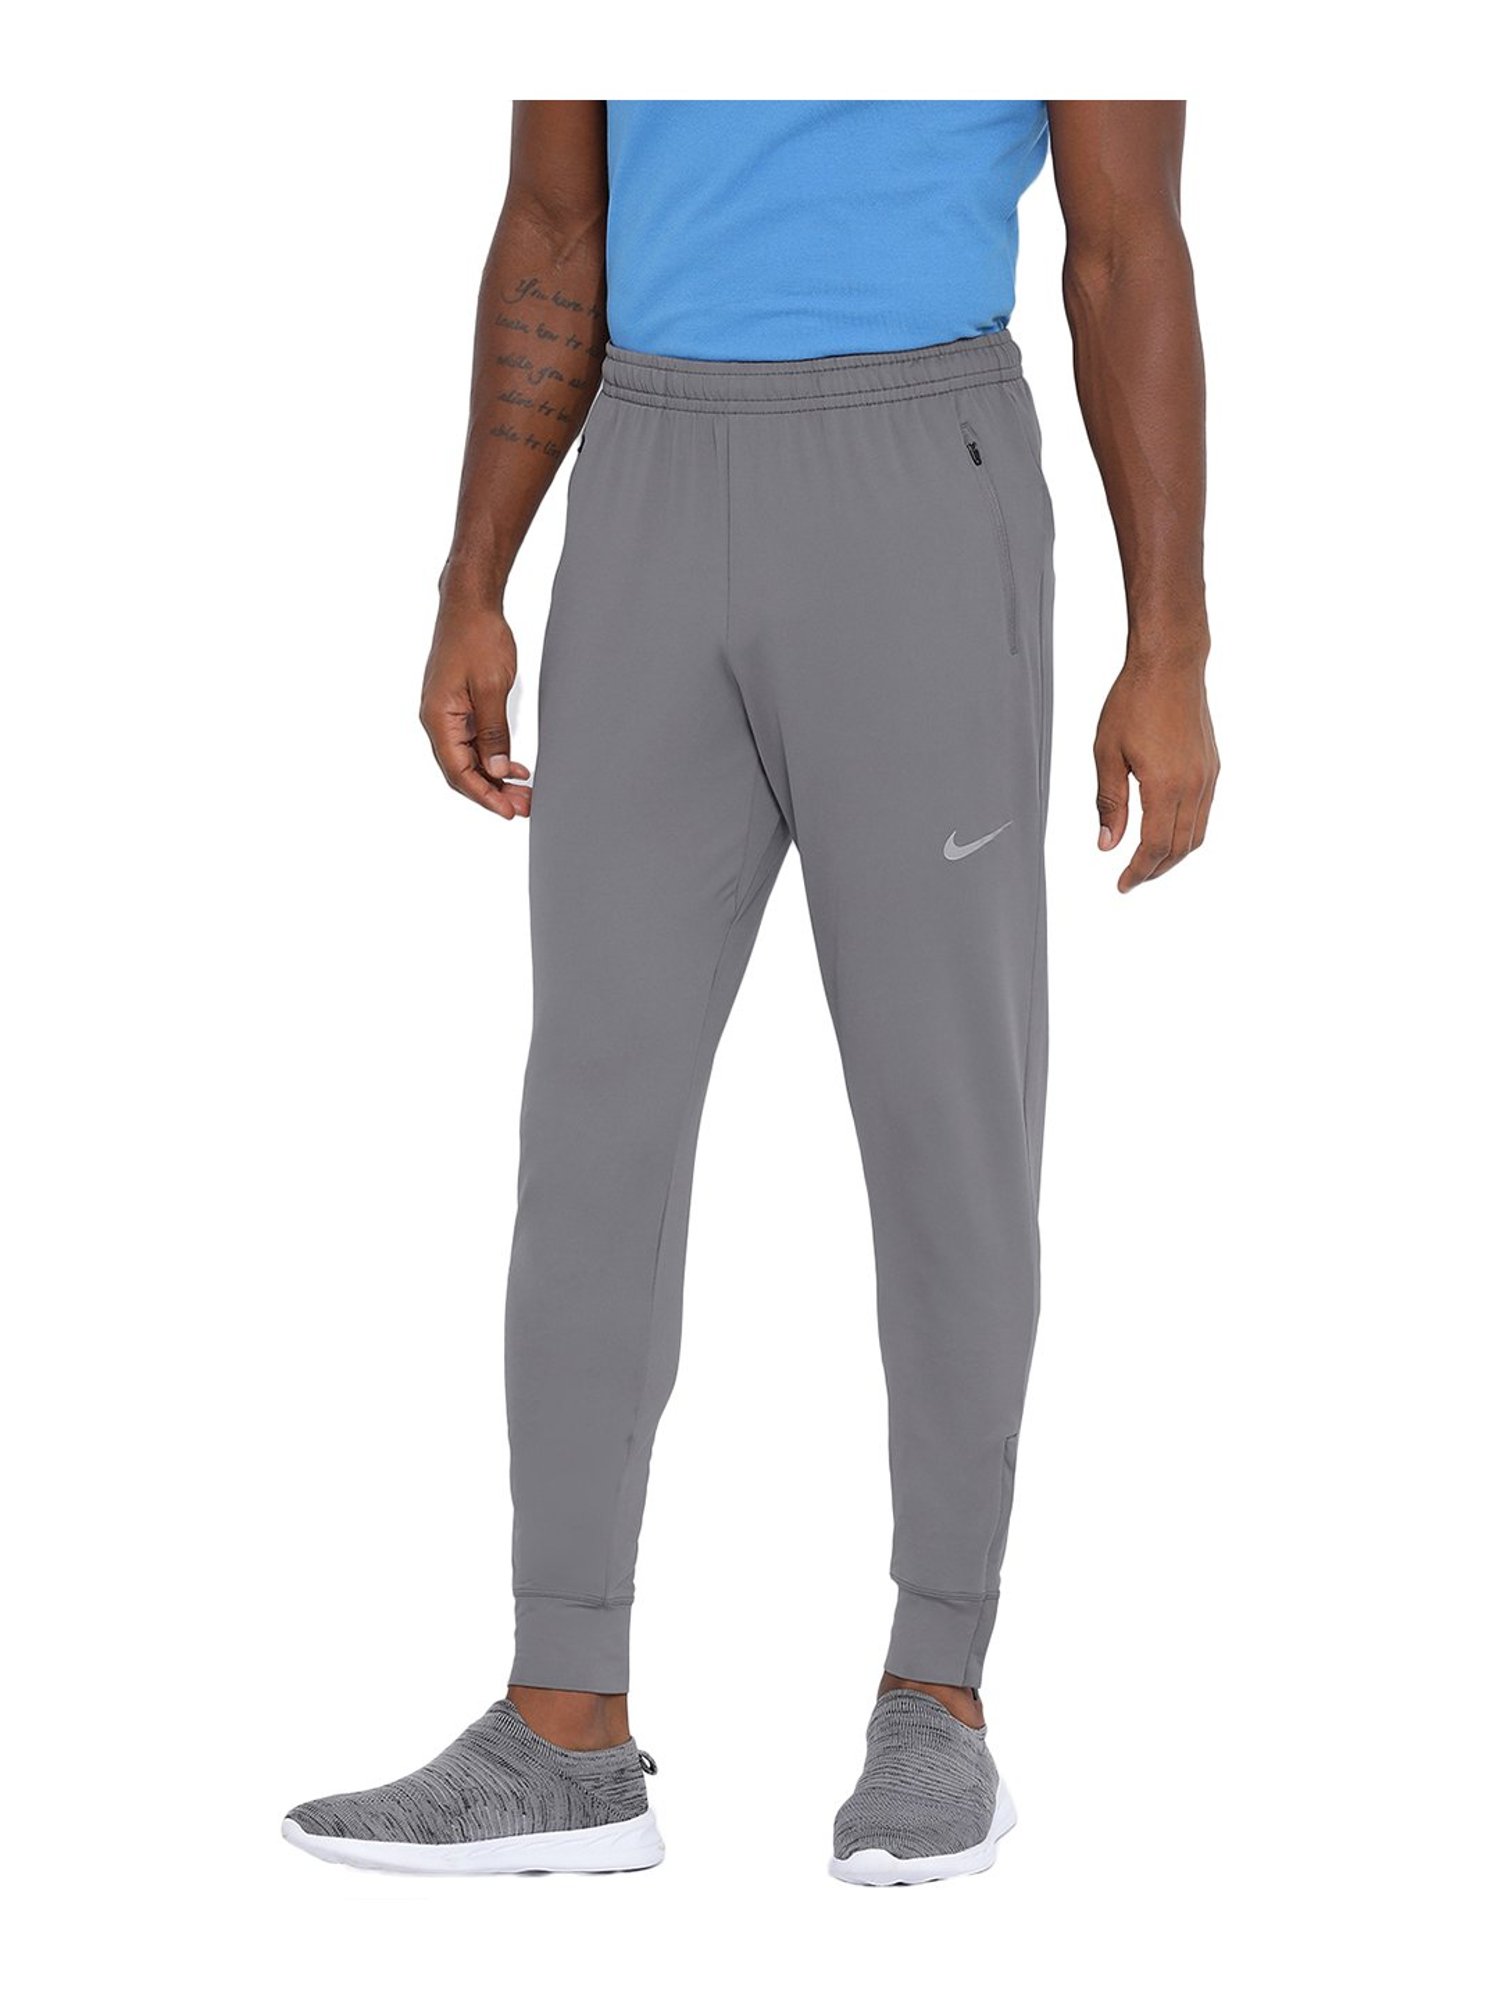 Nike Men's Therma-FIT Pants | Dick's Sporting Goods